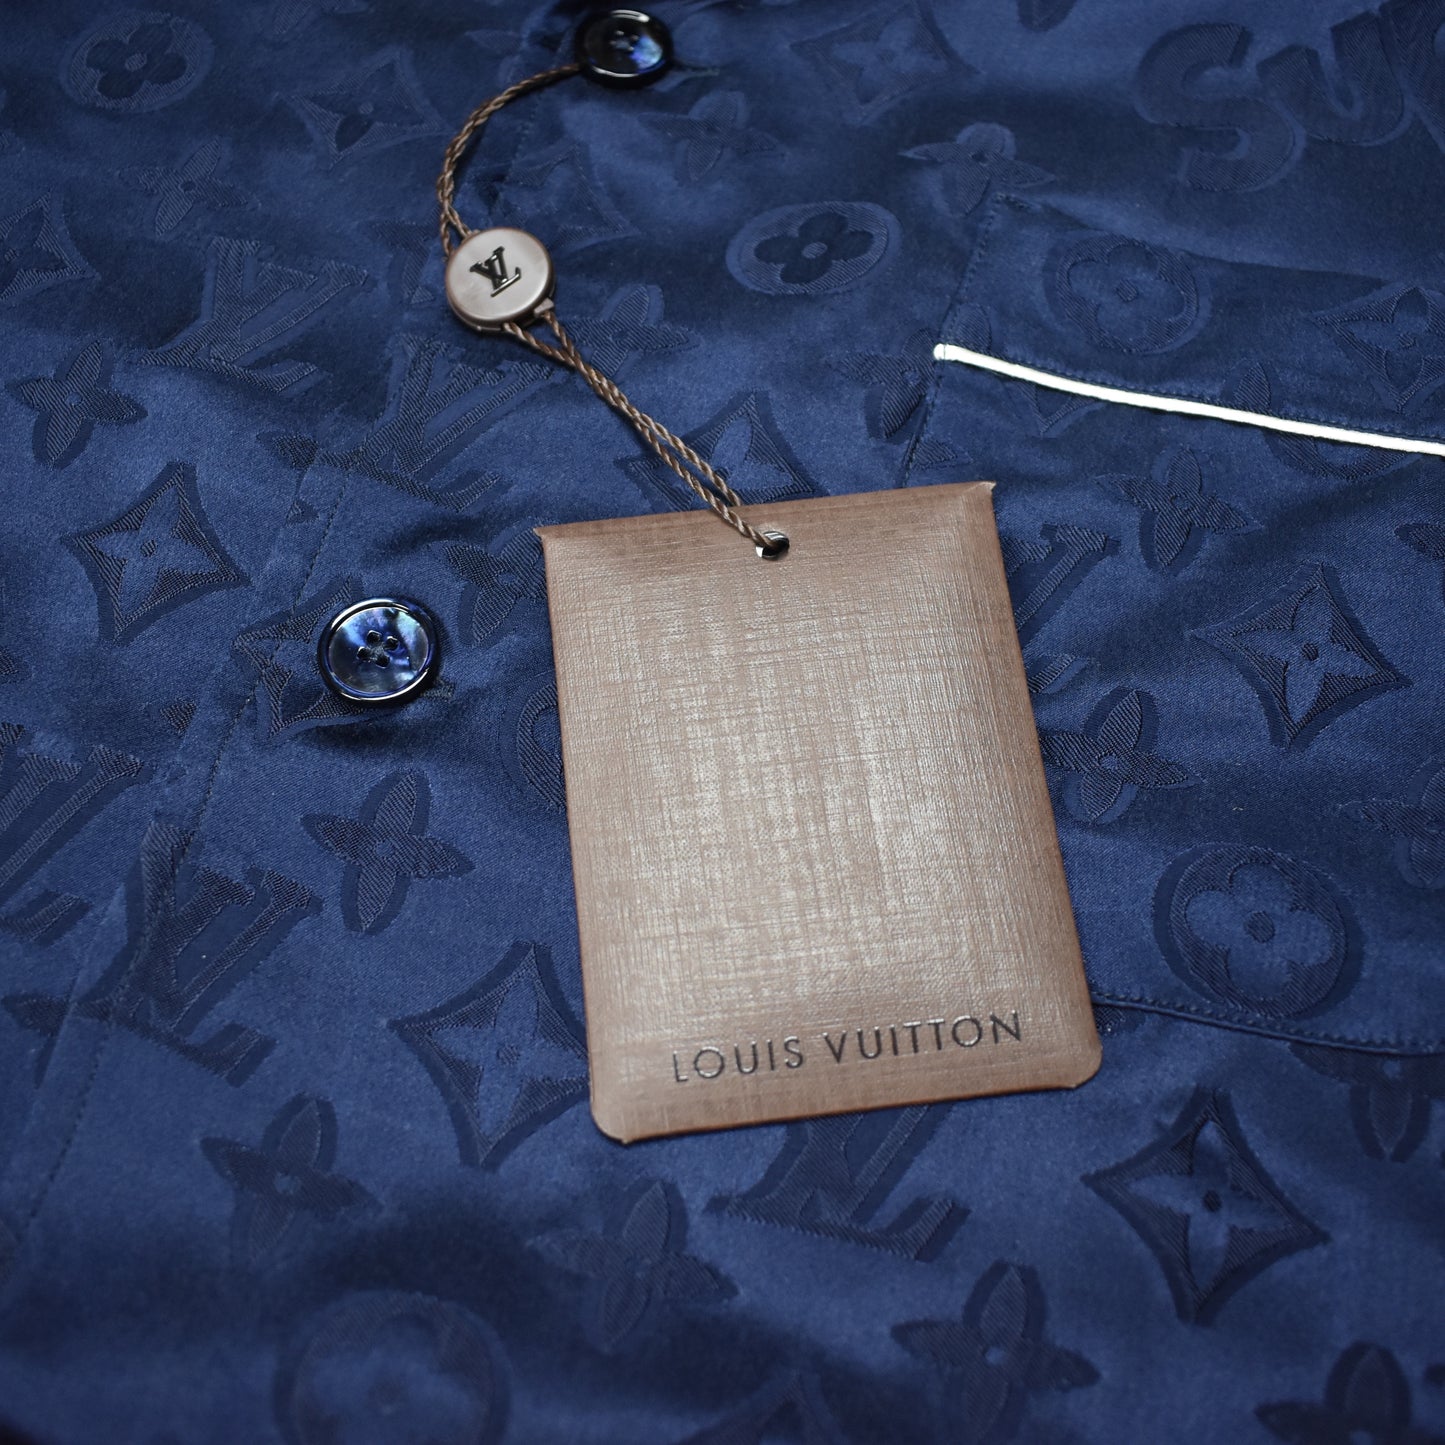 Louis Vuitton x Supreme Jacquard Silk Pajama Shirt | Size XS, Apparel